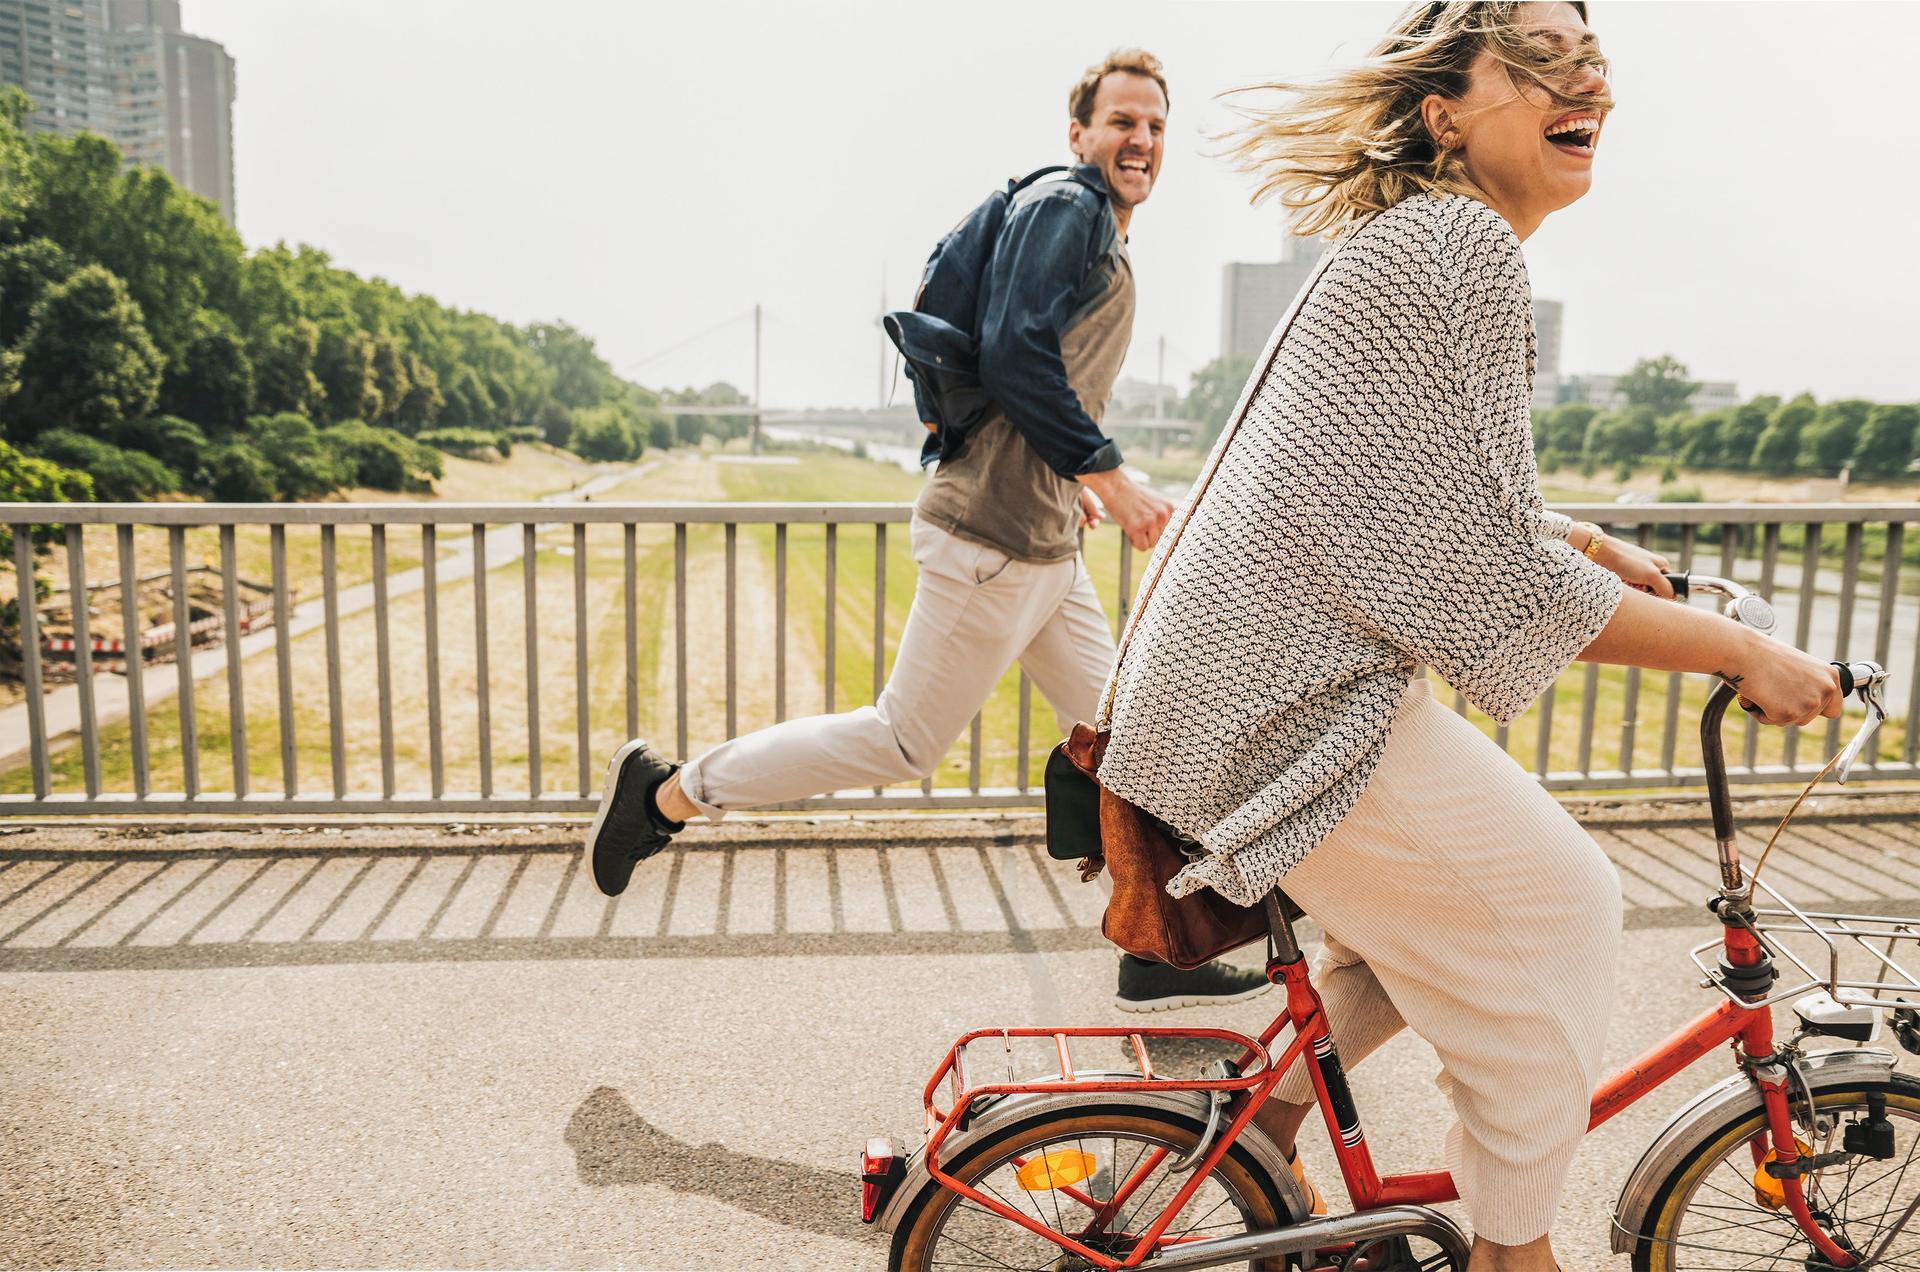 Mann läuft neben einer lachenden Frau, die Fahrrad fährt.